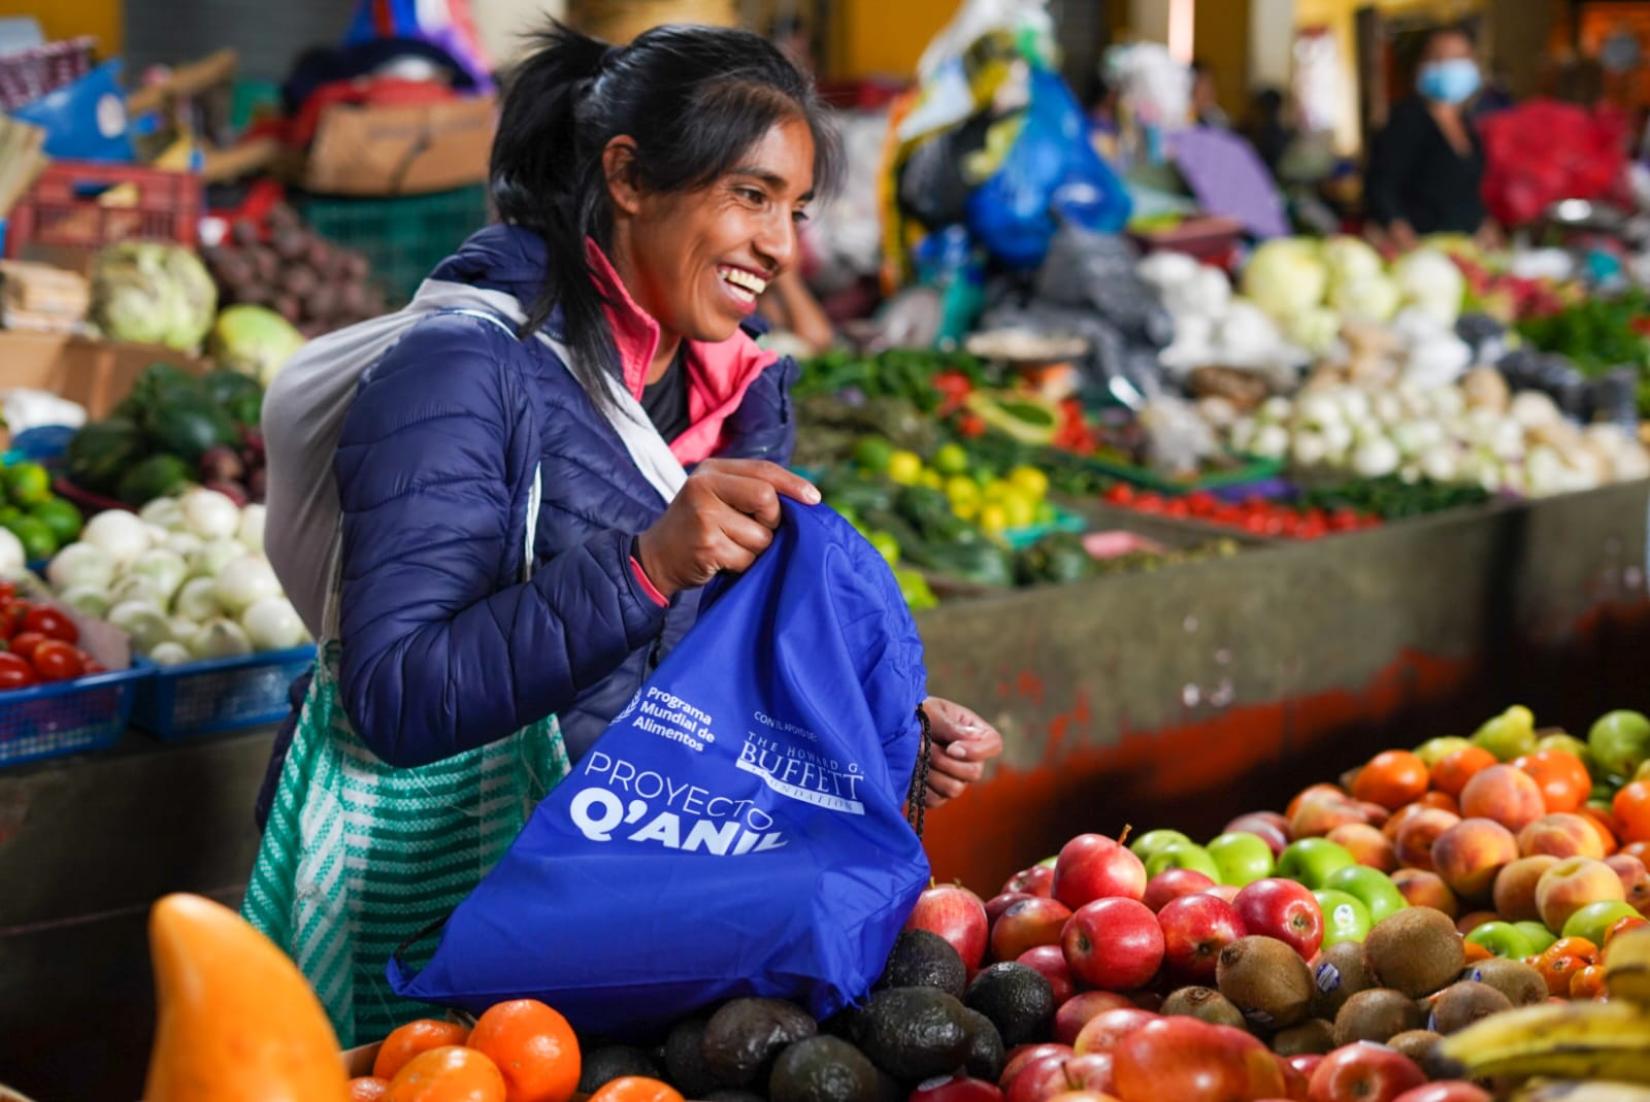 Mujer en una venta de frutas, sonriendo, llena bolsa con distintivo del proyecto Q'anil, con los productos expuestos al público